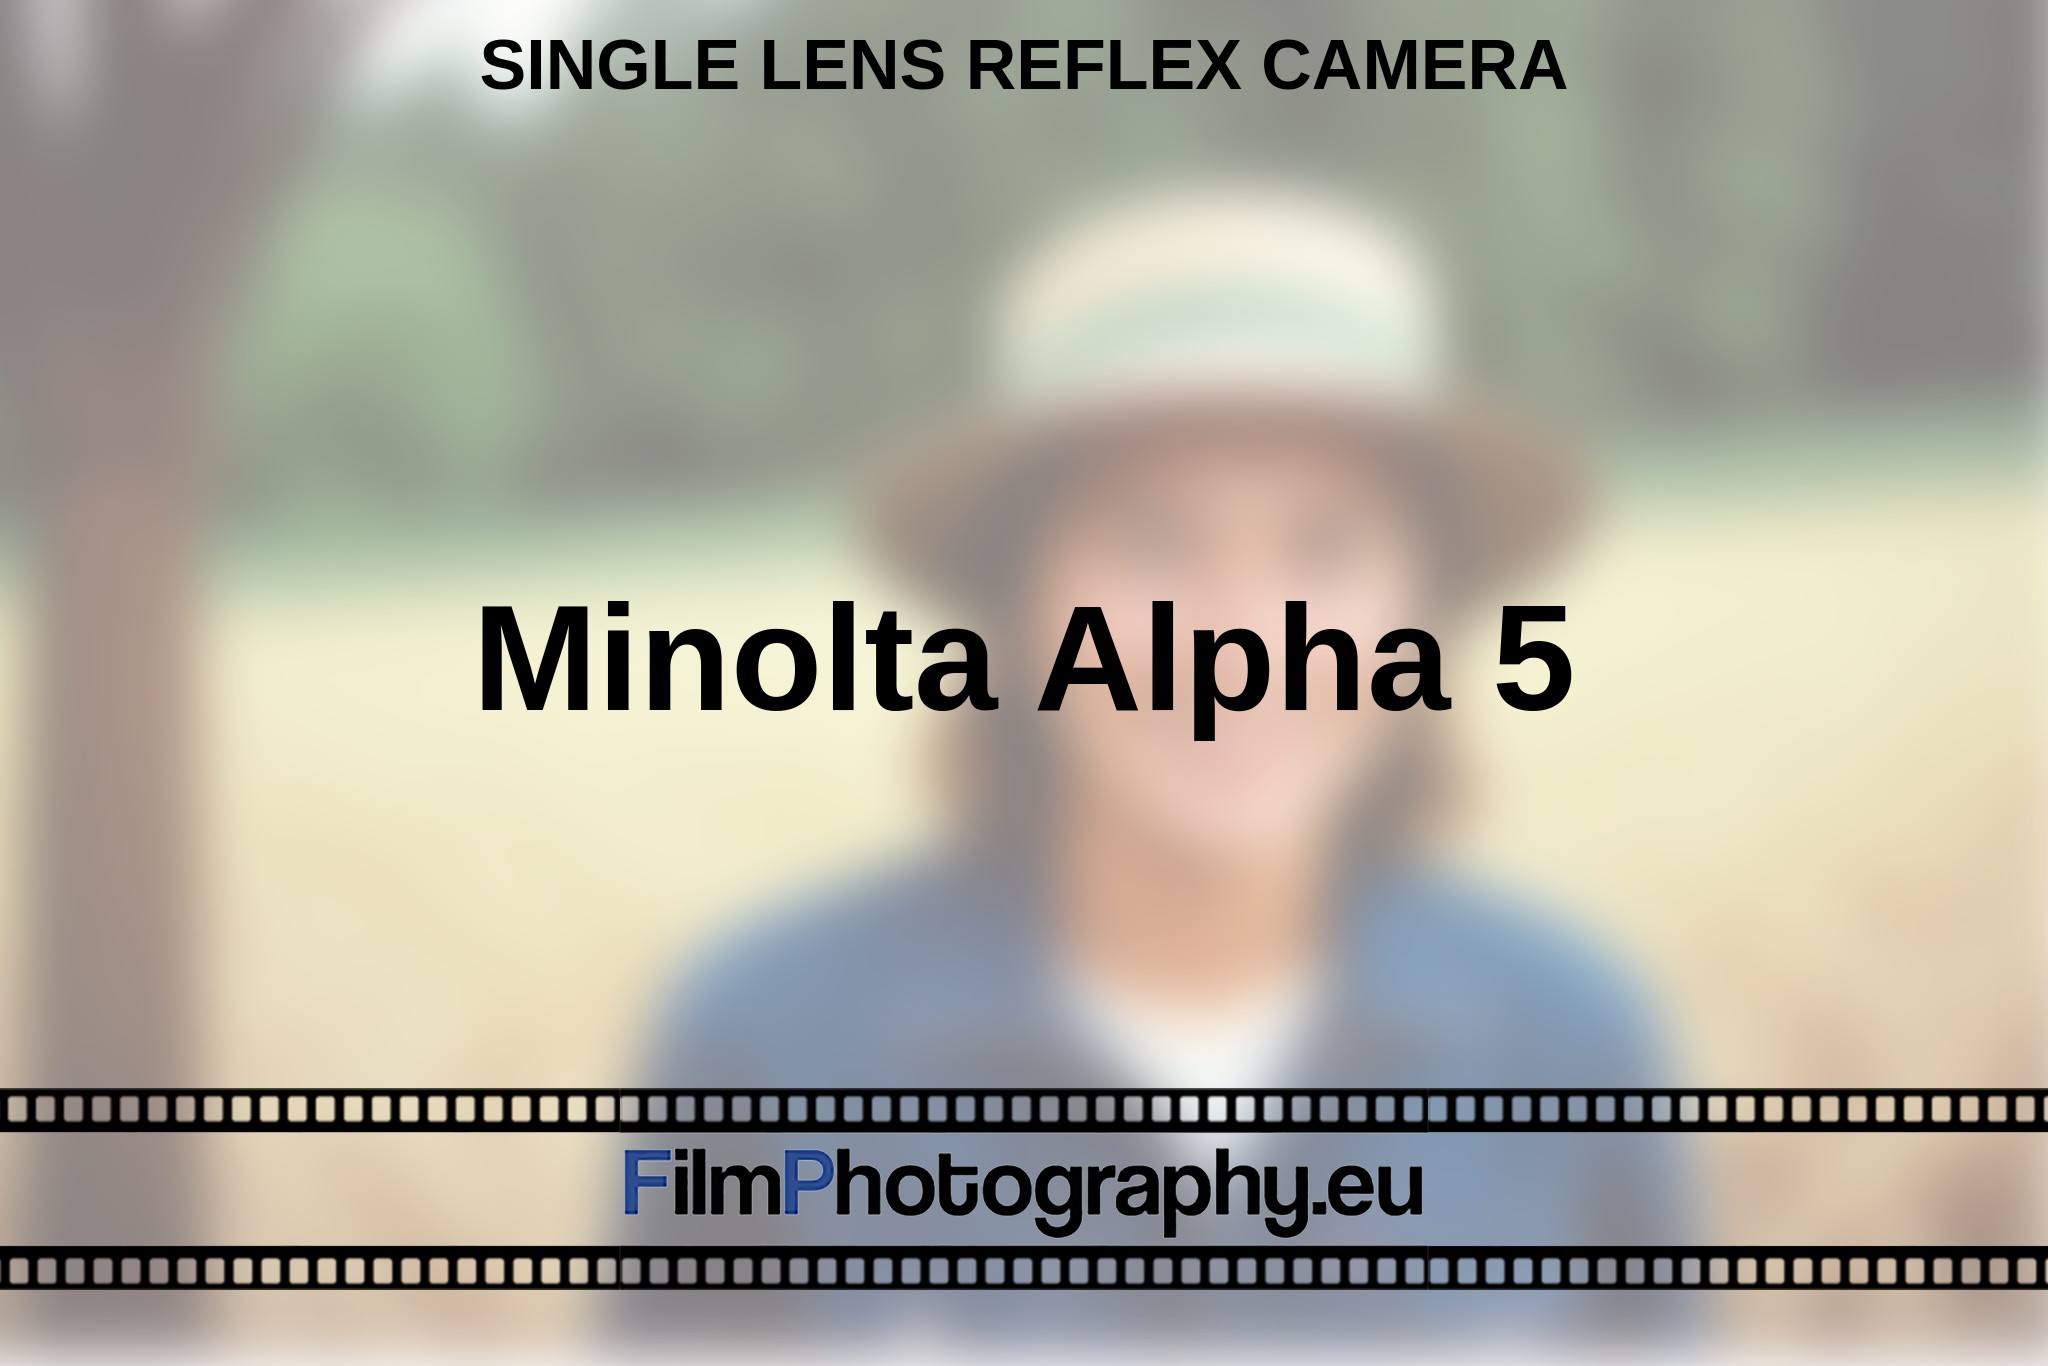 minolta-alpha-5-single-lens-reflex-camera-en-bnv.jpg